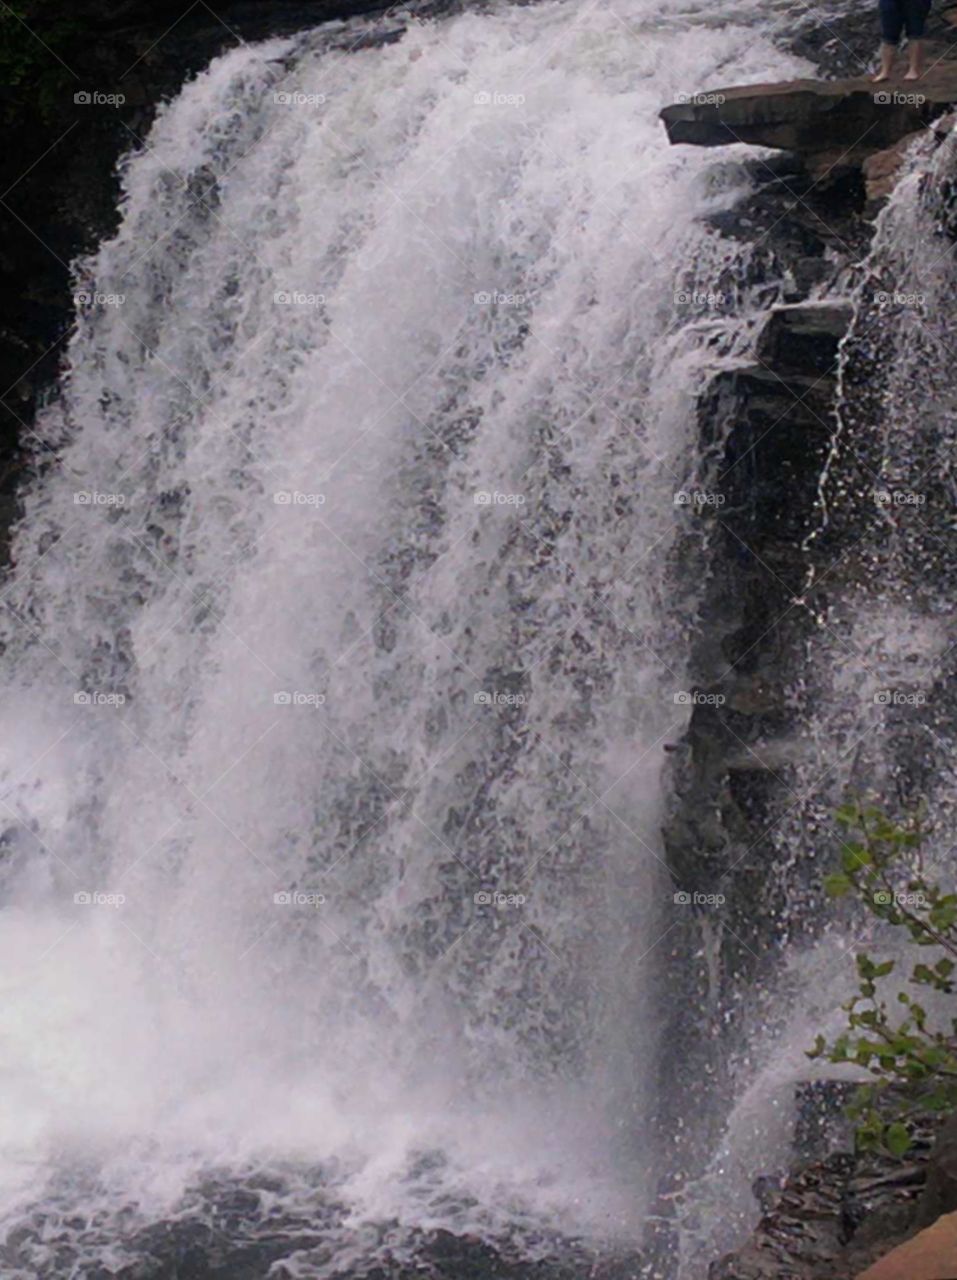 Desoto falls